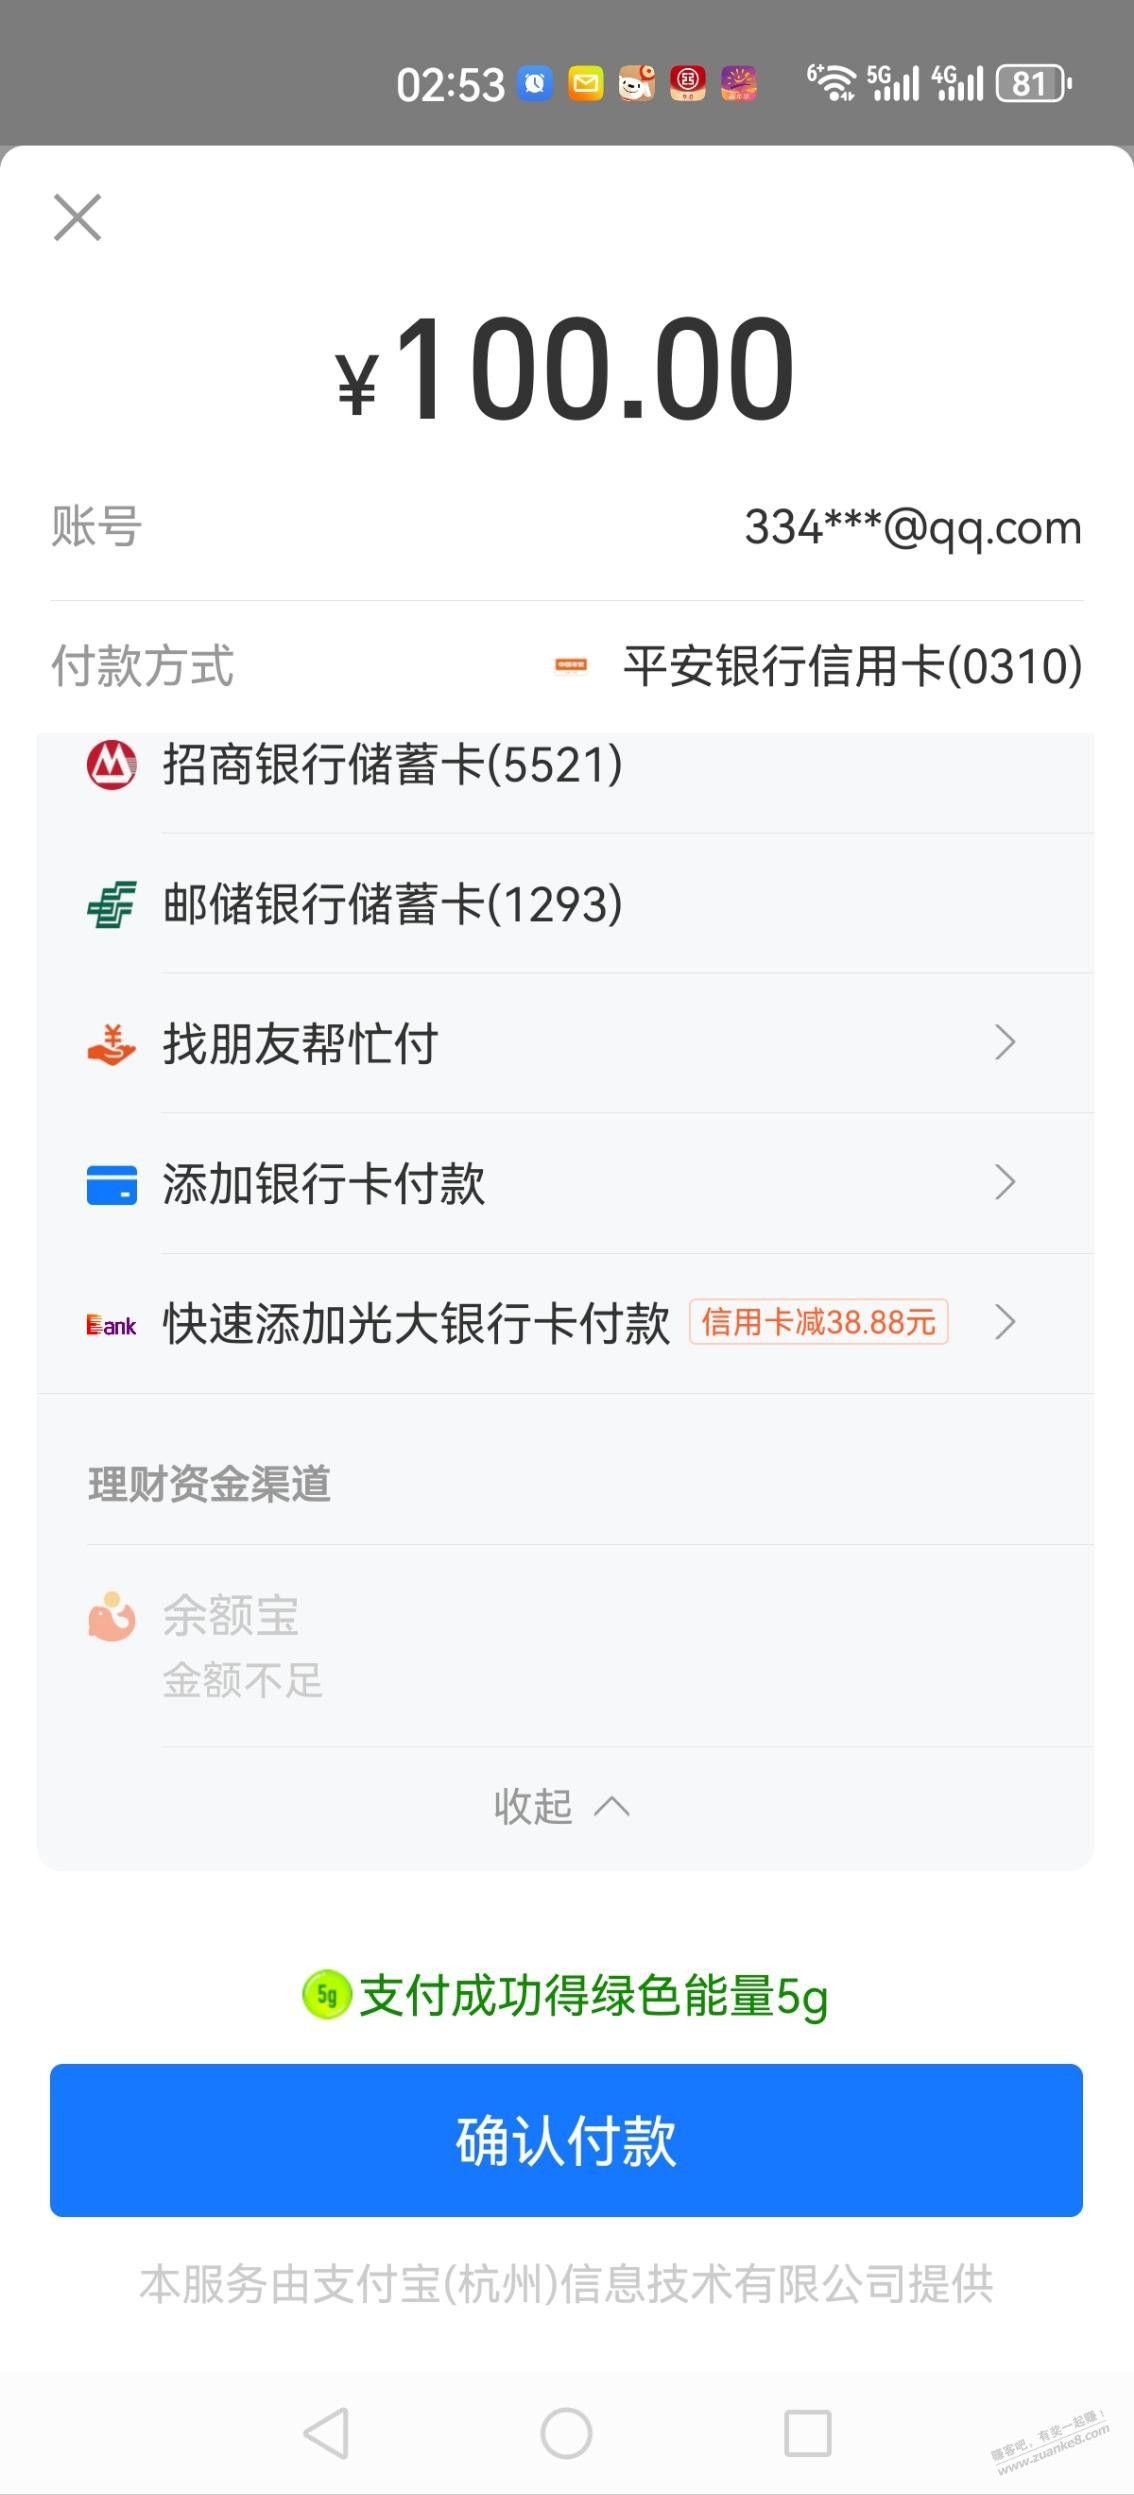 盒马App买100元礼品卡光大xing/用卡立减38.8元-惠小助(52huixz.com)